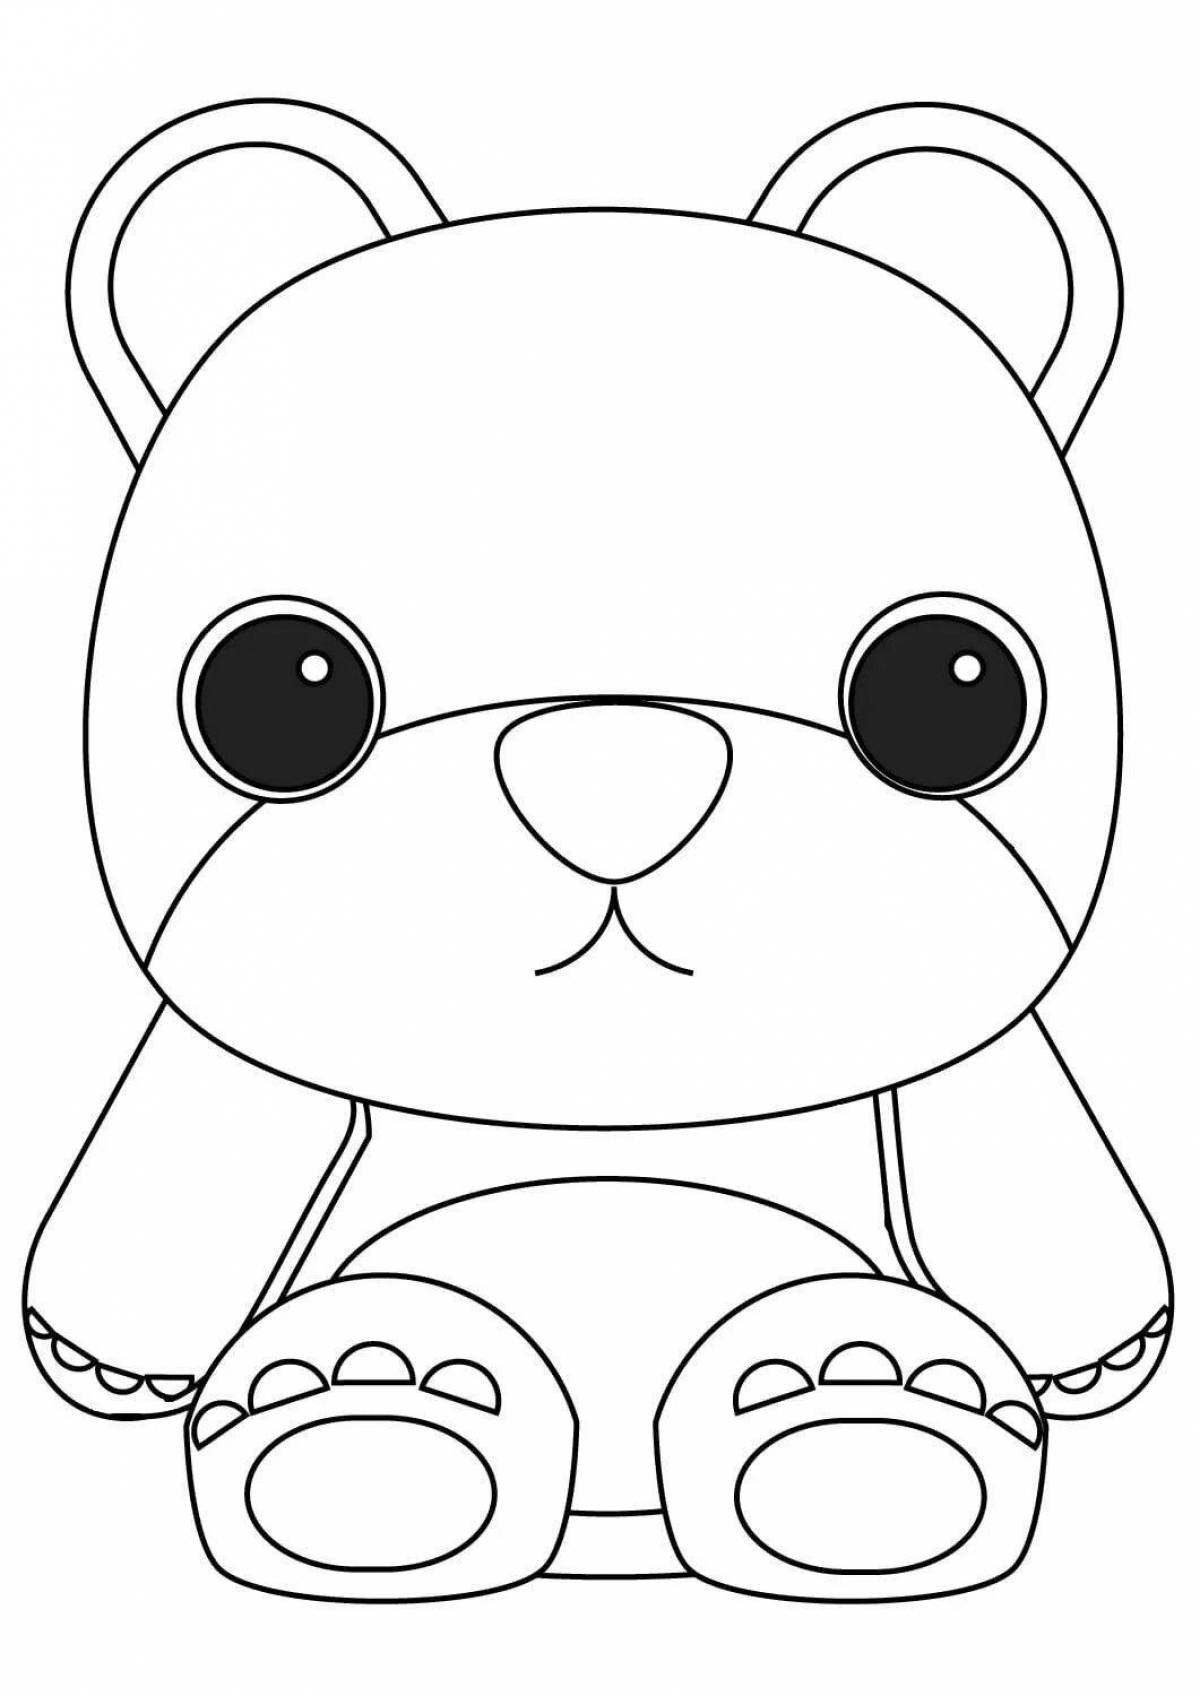 Cute cute teddy bear coloring book